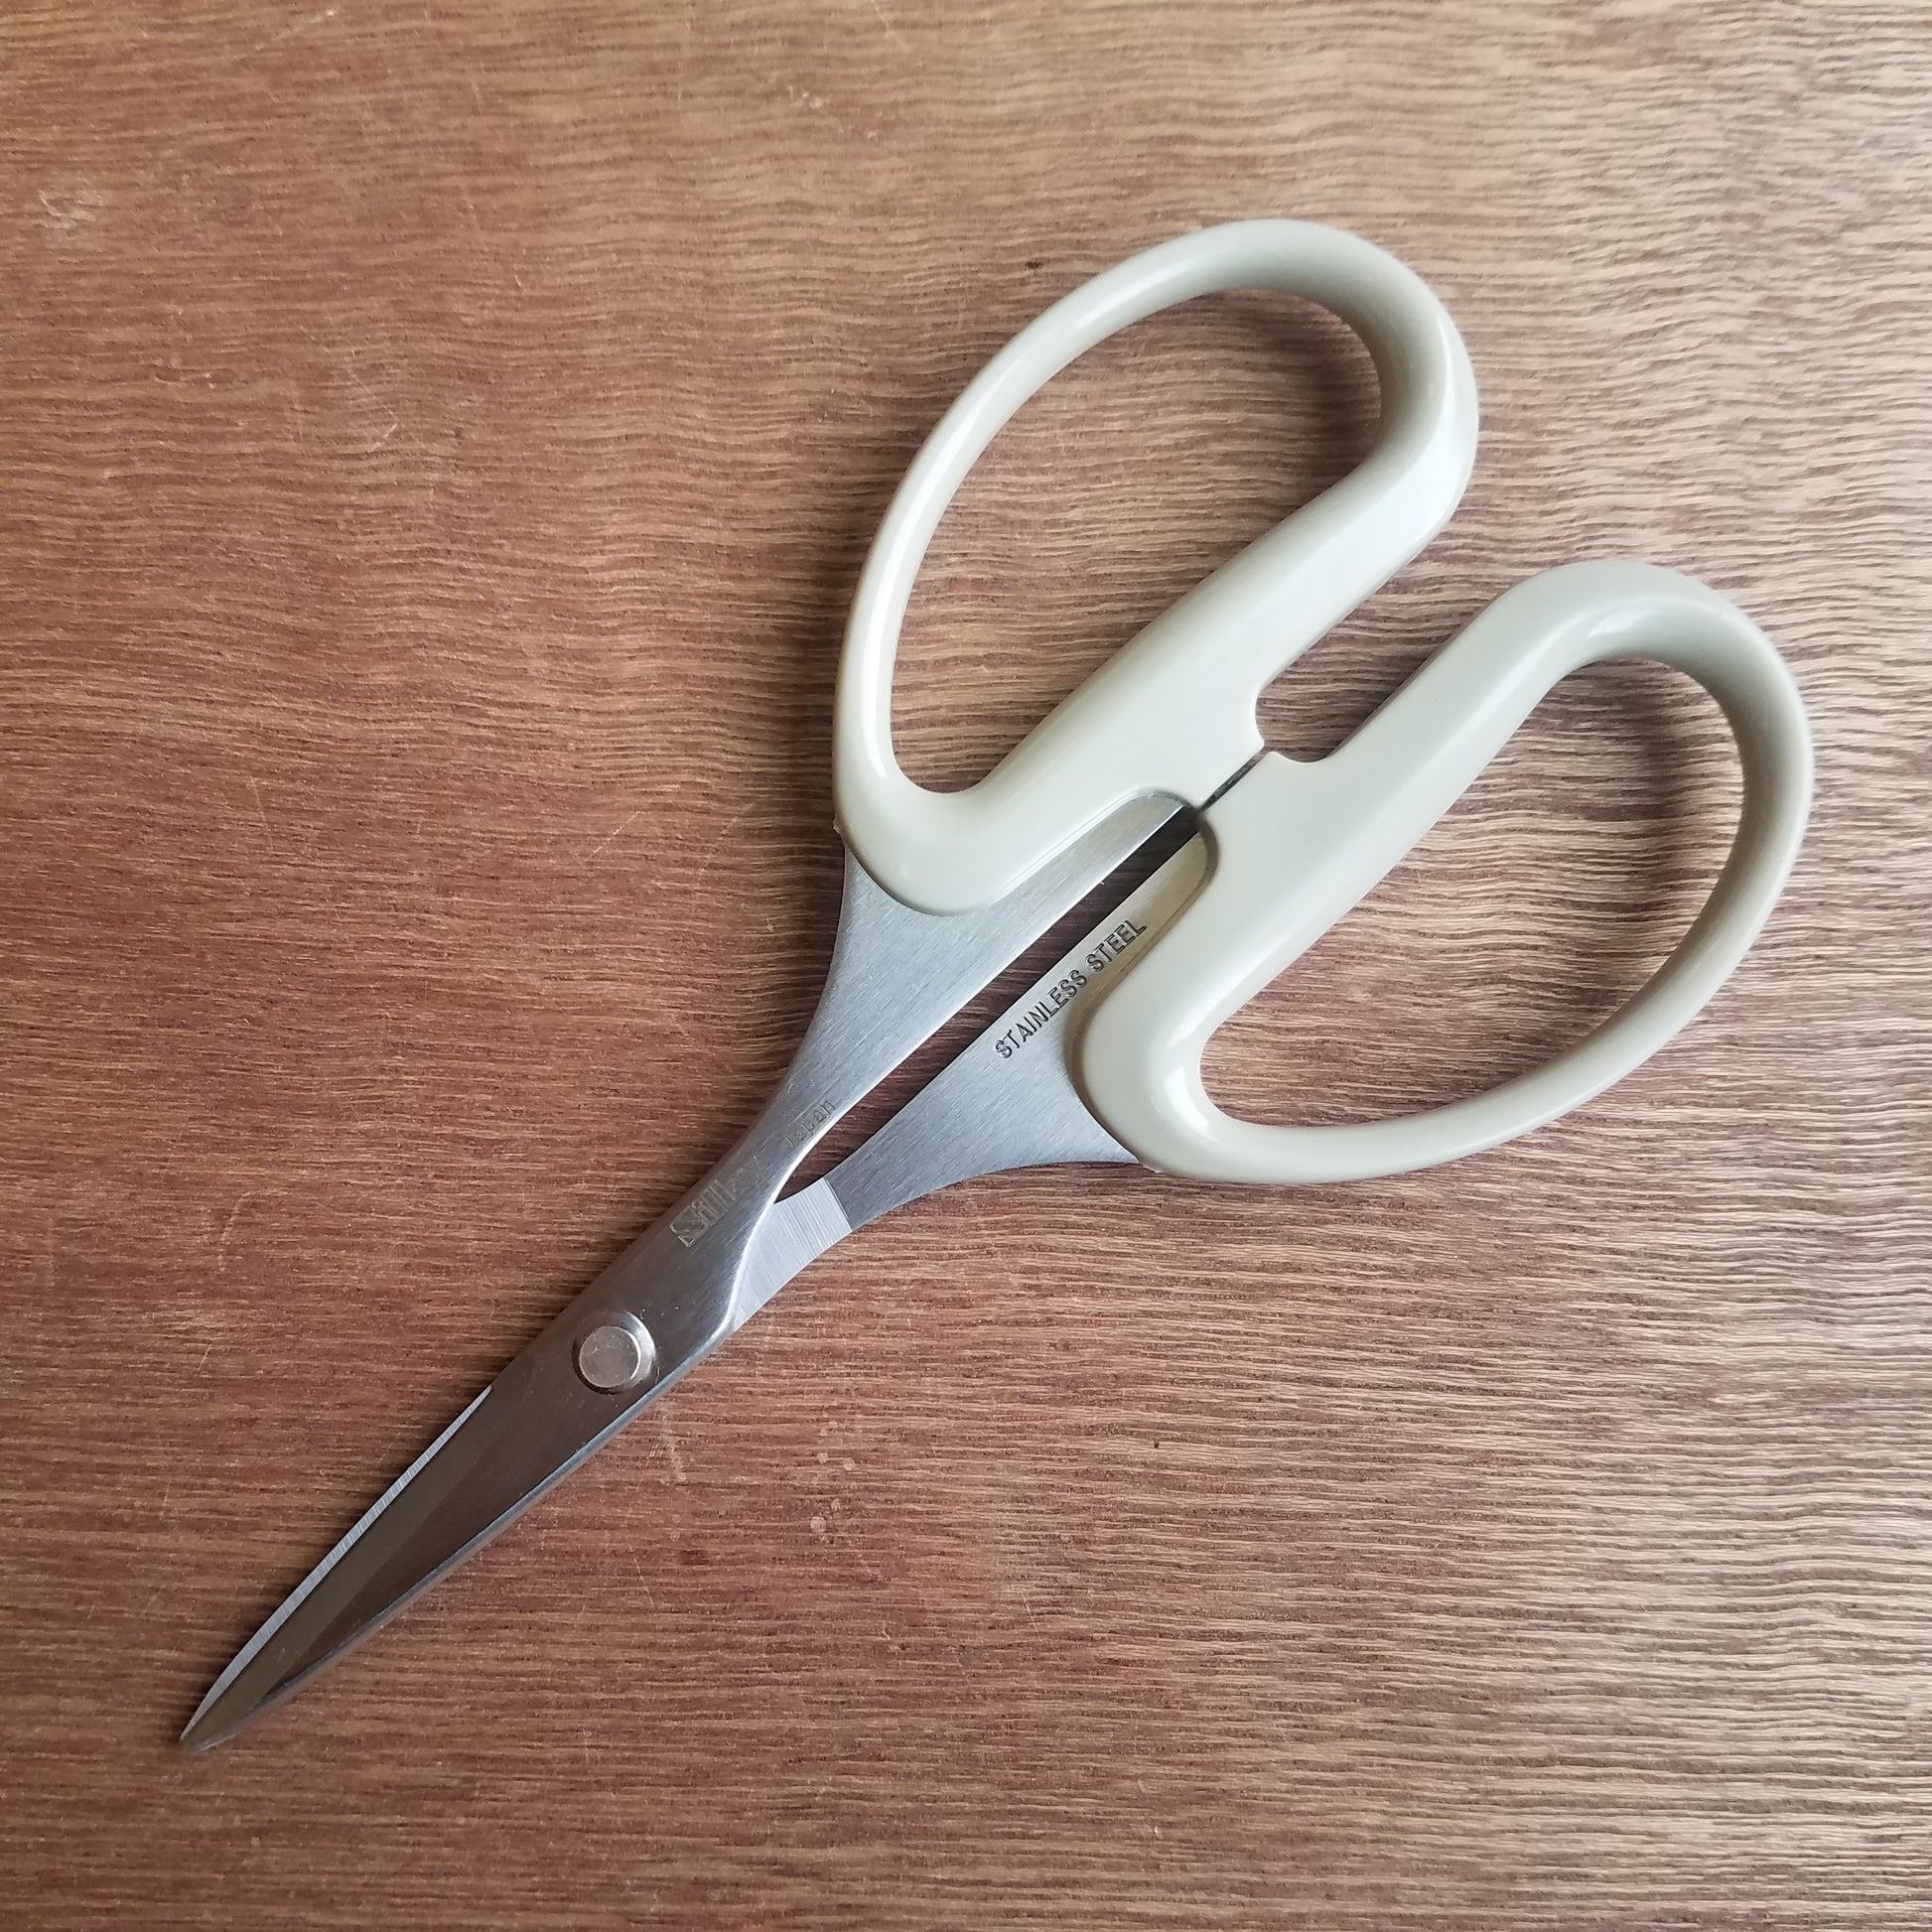 Marusho SILKY Stainless Steel Multipurpose Scissors